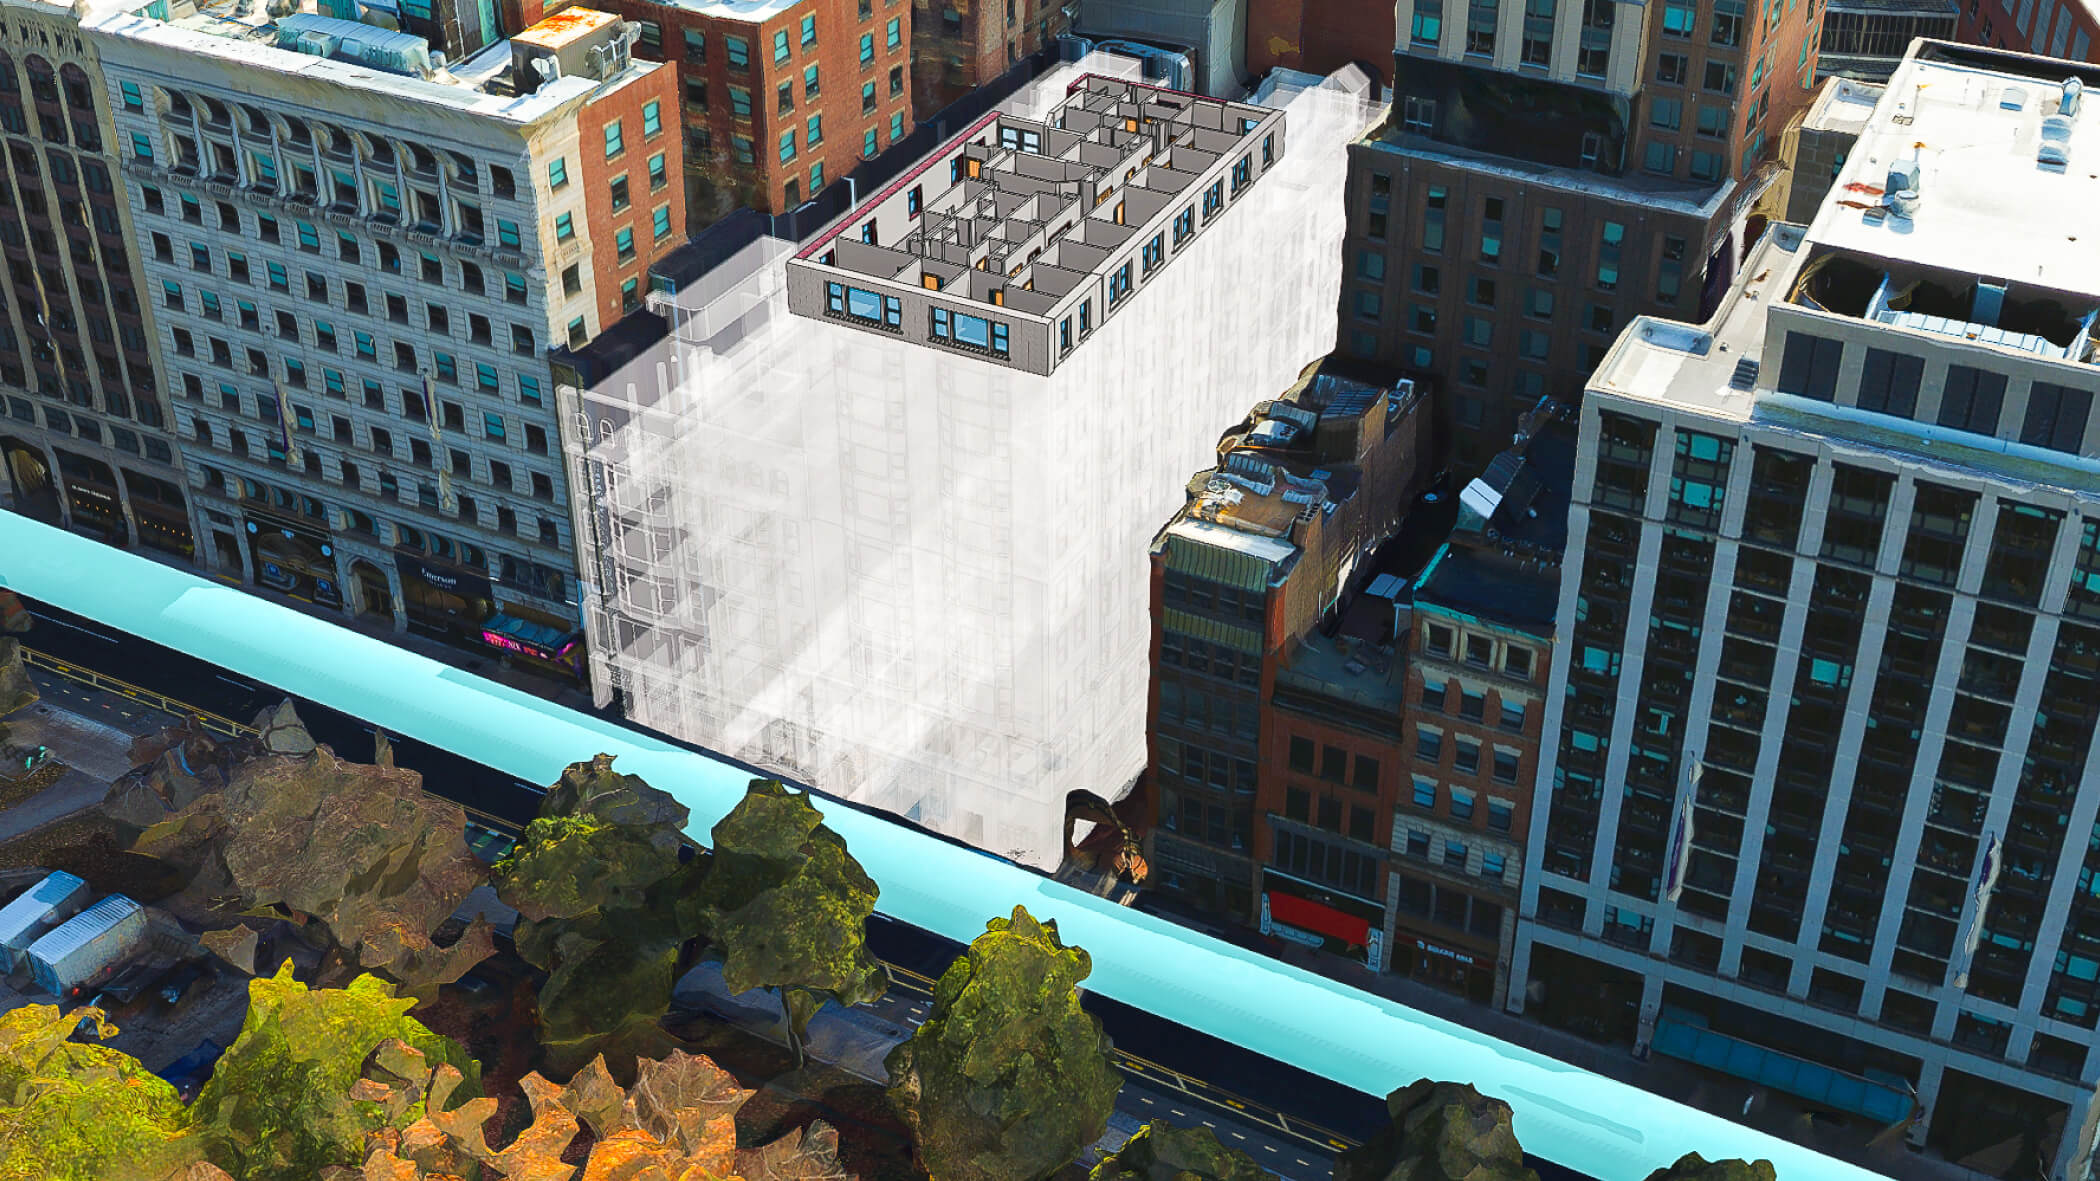 Modèle de bâtiment 3D comportant de nombreux étages, surmonté d’une mise en page en 3D, placé dans un cadre blanc sur un arrière-plan urbain flouté